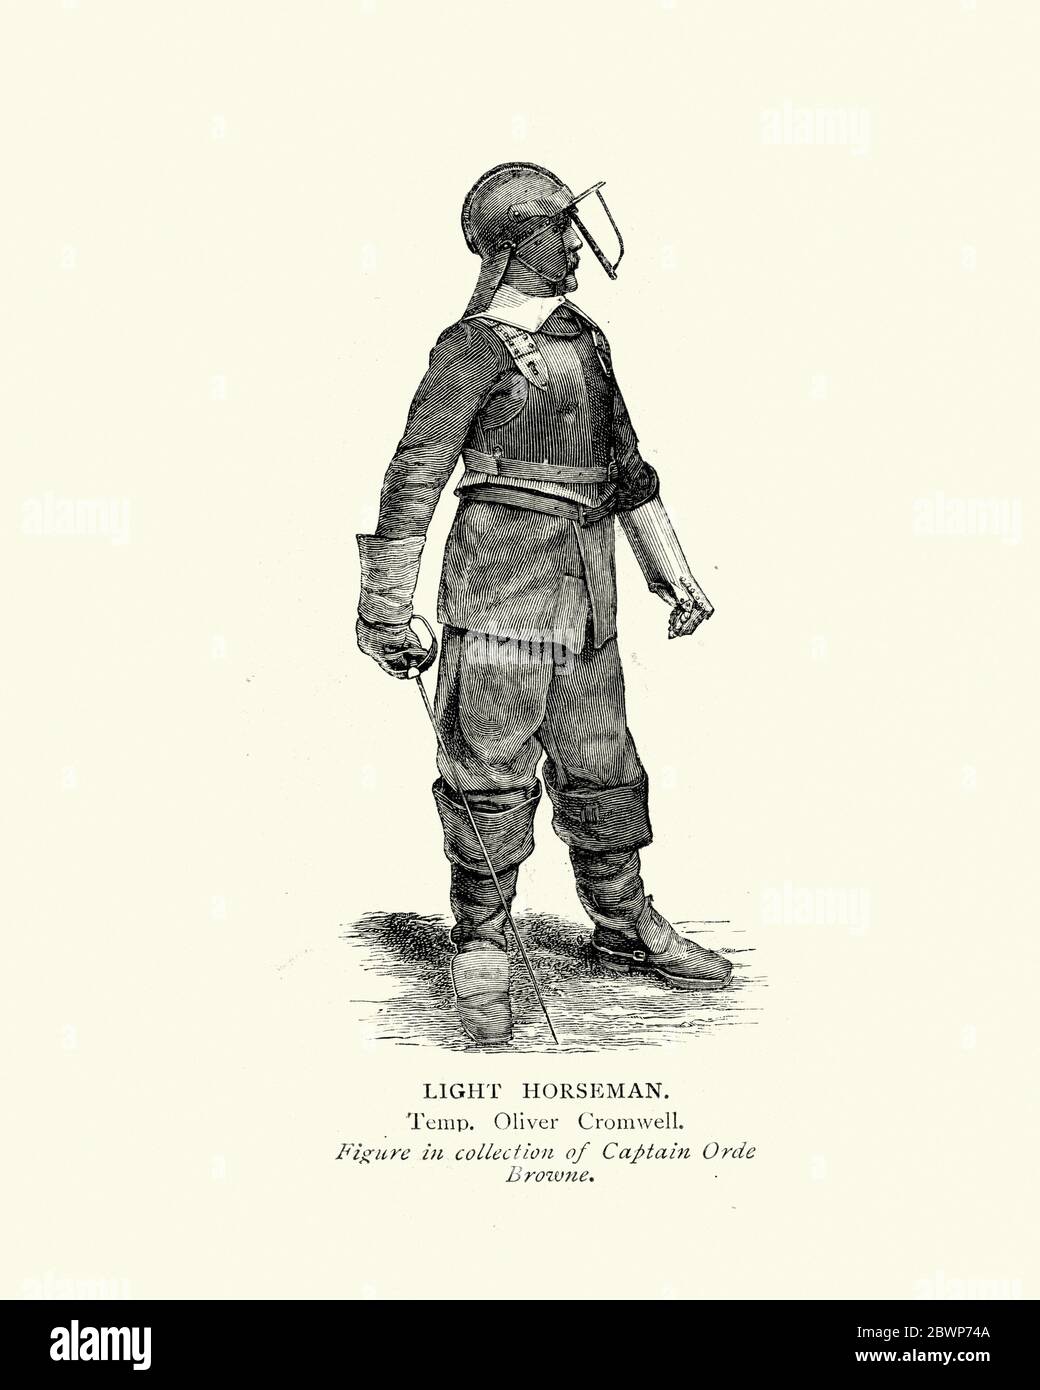 Cavaliers légers, cavalerie parlementaire de l'époque de la guerre civile anglaise, uniforme militaire du XVIIe siècle Banque D'Images